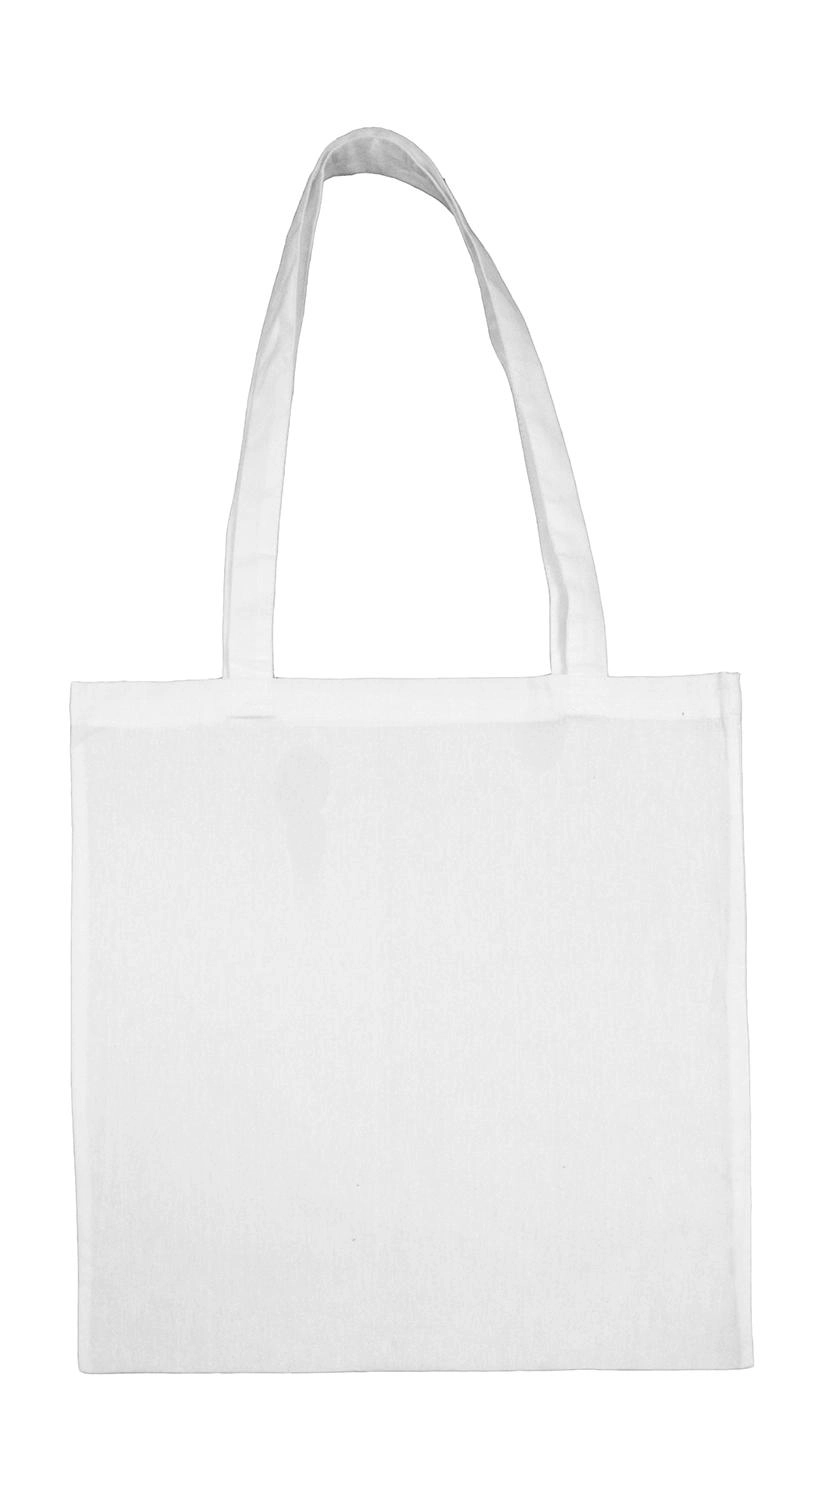 Cotton Bag LH zum Besticken und Bedrucken in der Farbe Snowwhite mit Ihren Logo, Schriftzug oder Motiv.